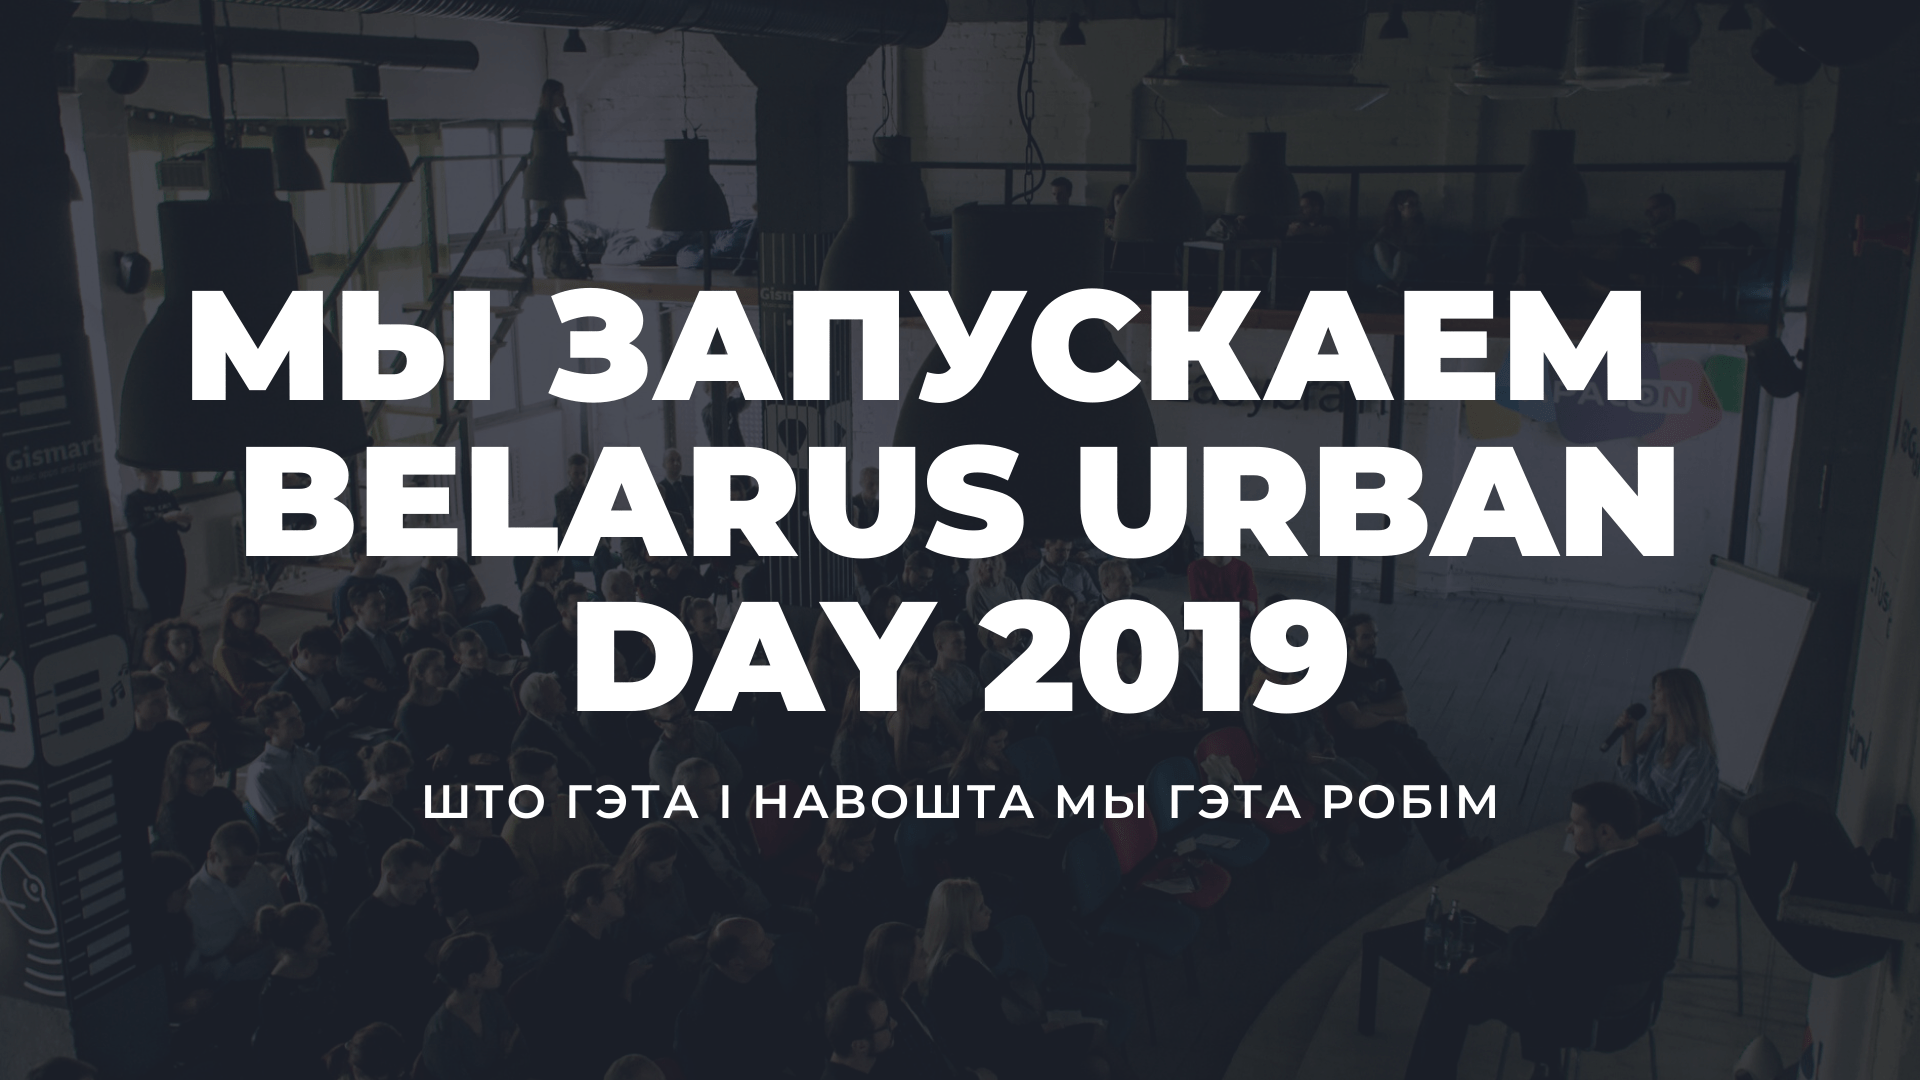 Мы запускаем Belarus Urban Day-2019. Што гэта і навошта мы гэта робім?